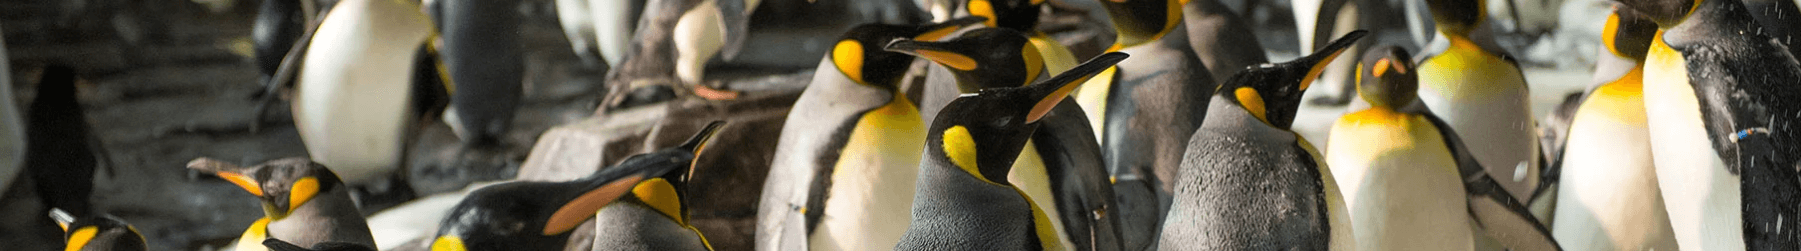 Antartica Penguin